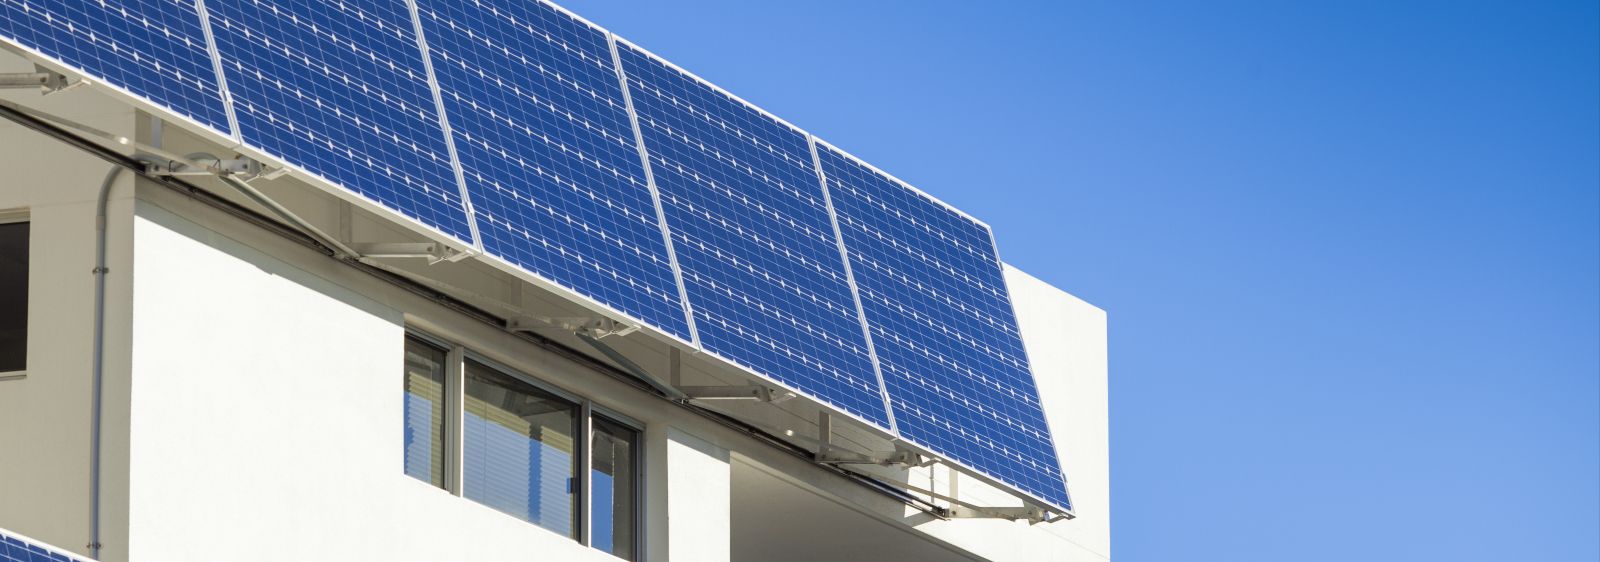 Ein Beispiel für die solargestützte Energieversorgung von Gebäuden.